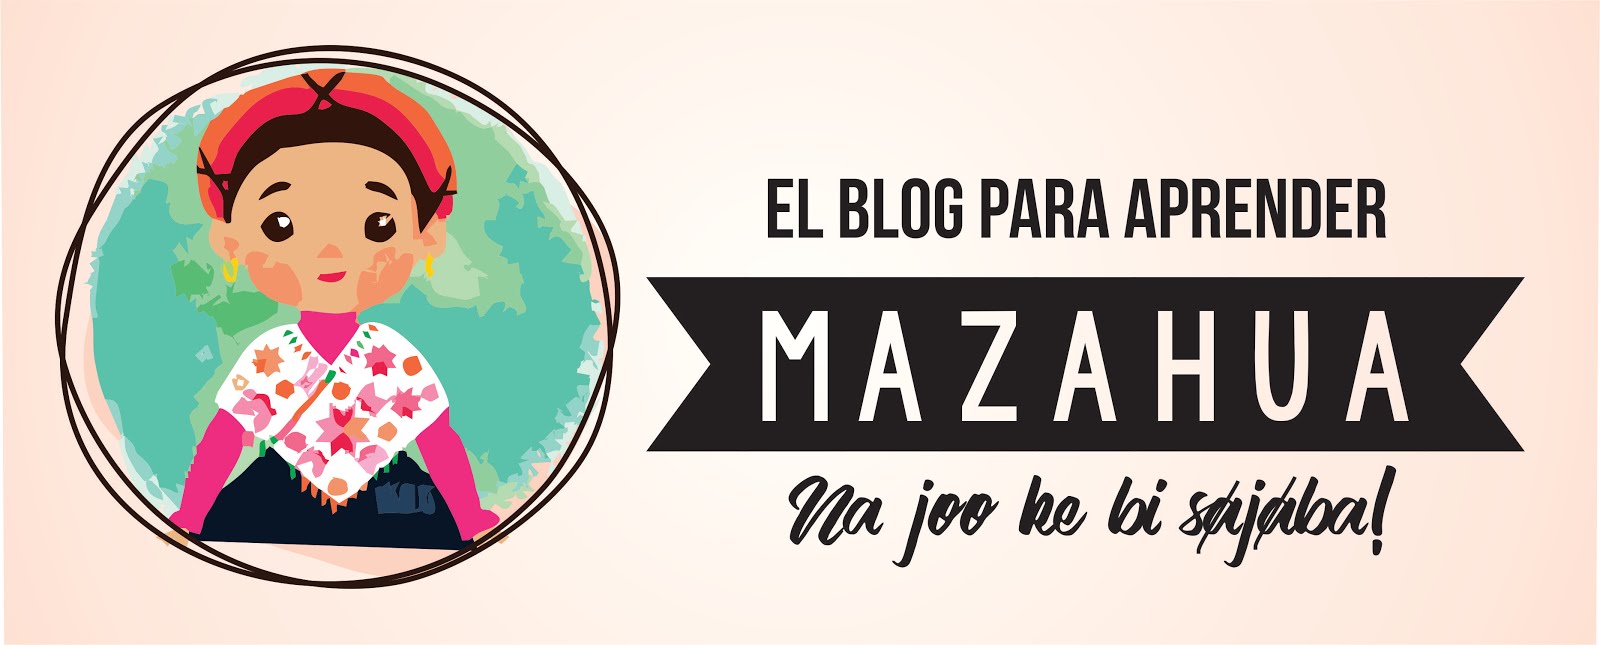 El Blog para aprender Mazahua